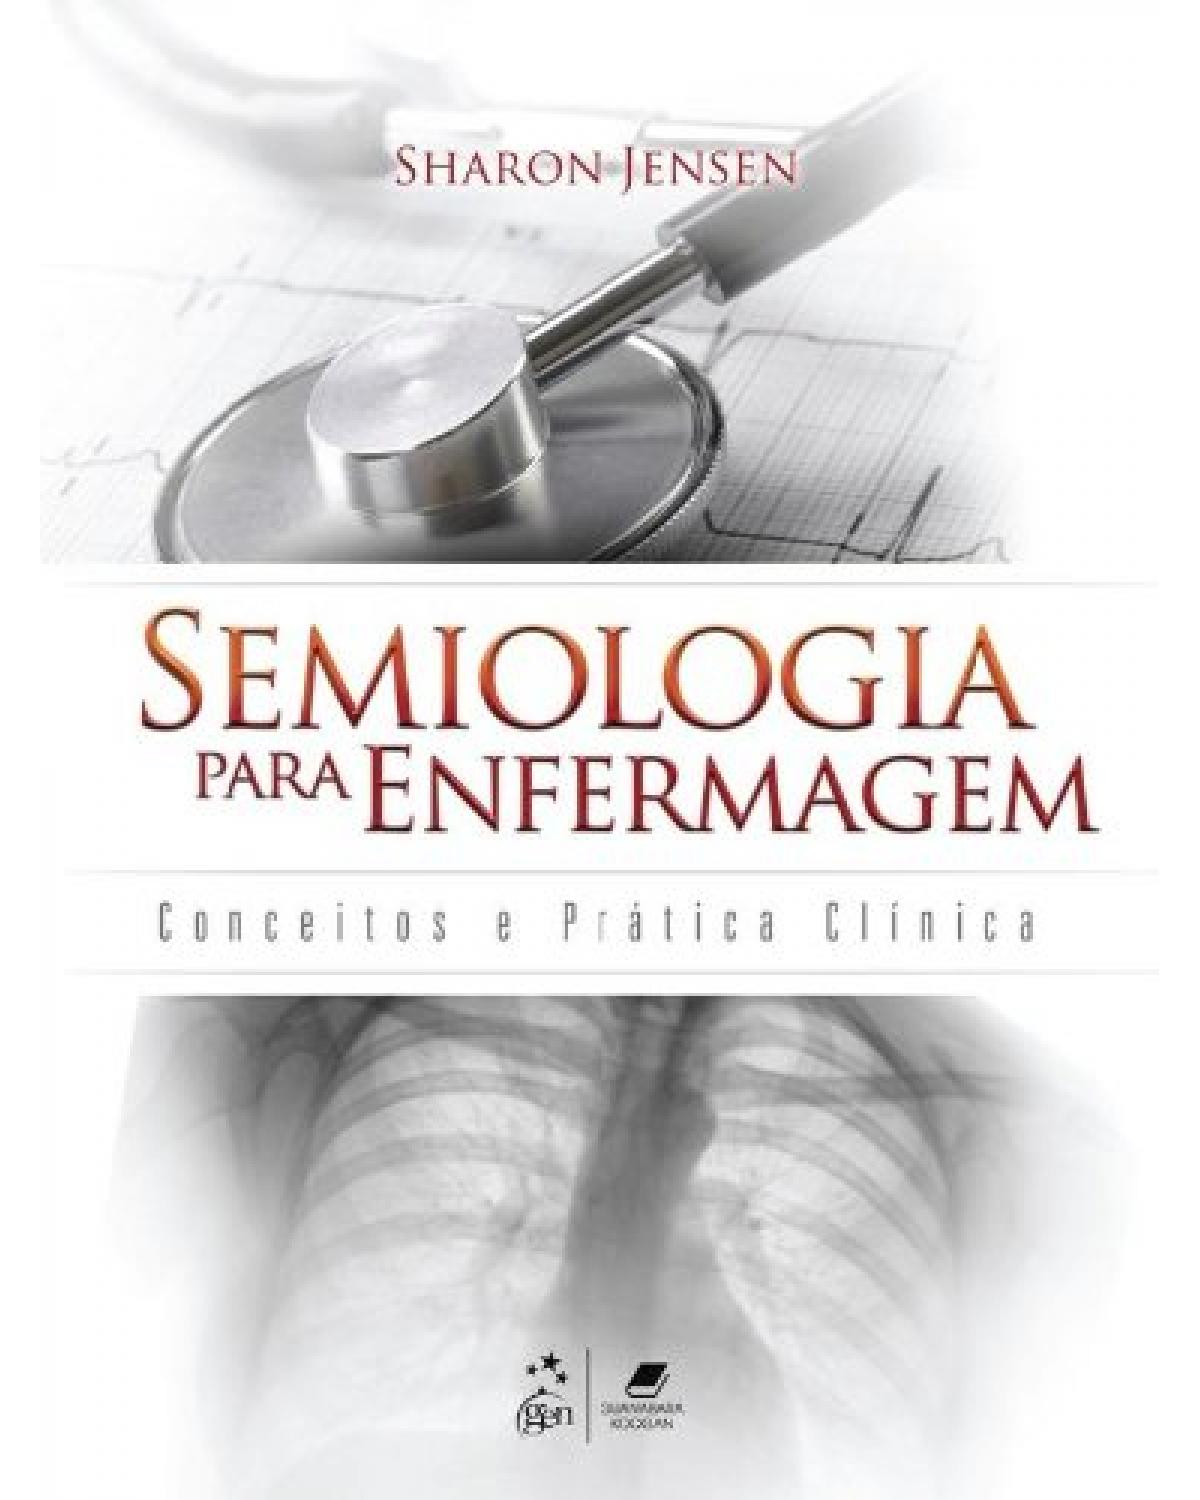 Semiologia para enfermagem - Conceitos e prática clínica - 1ª Edição | 2013